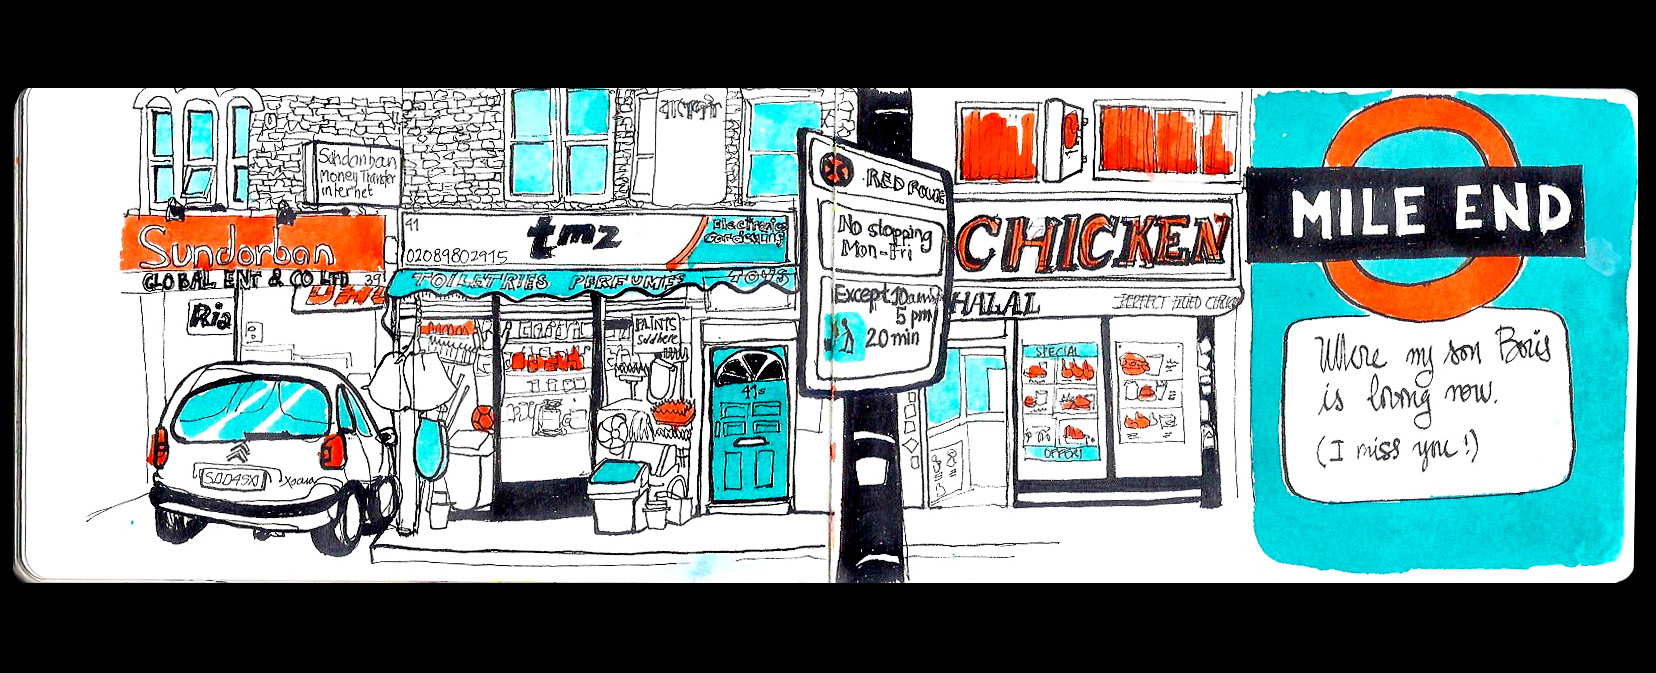 Maru Godas. Illustrator, designer, urban sketcher - Children's